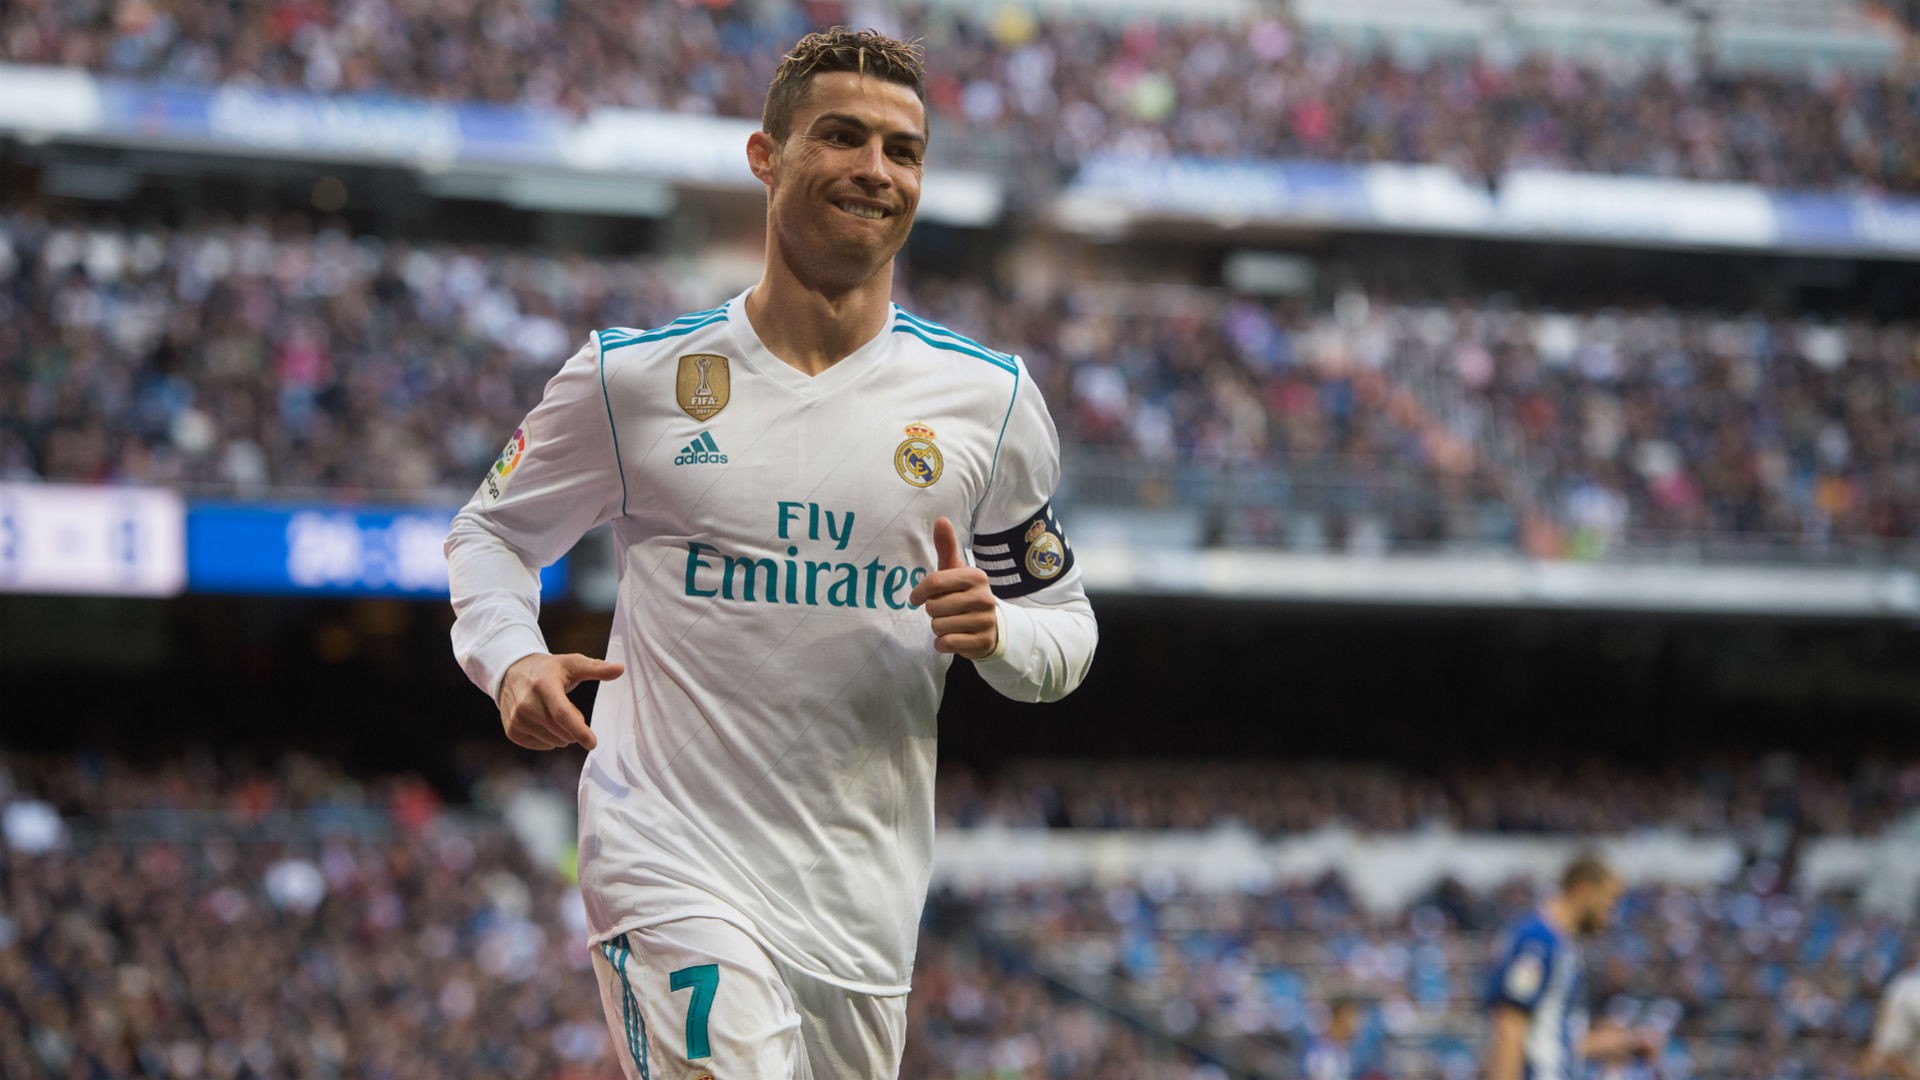 Hình ảnh: Ronaldo hứa hẹn sẽ còn có thể thi đấu đỉnh cao lâu hơn nữa